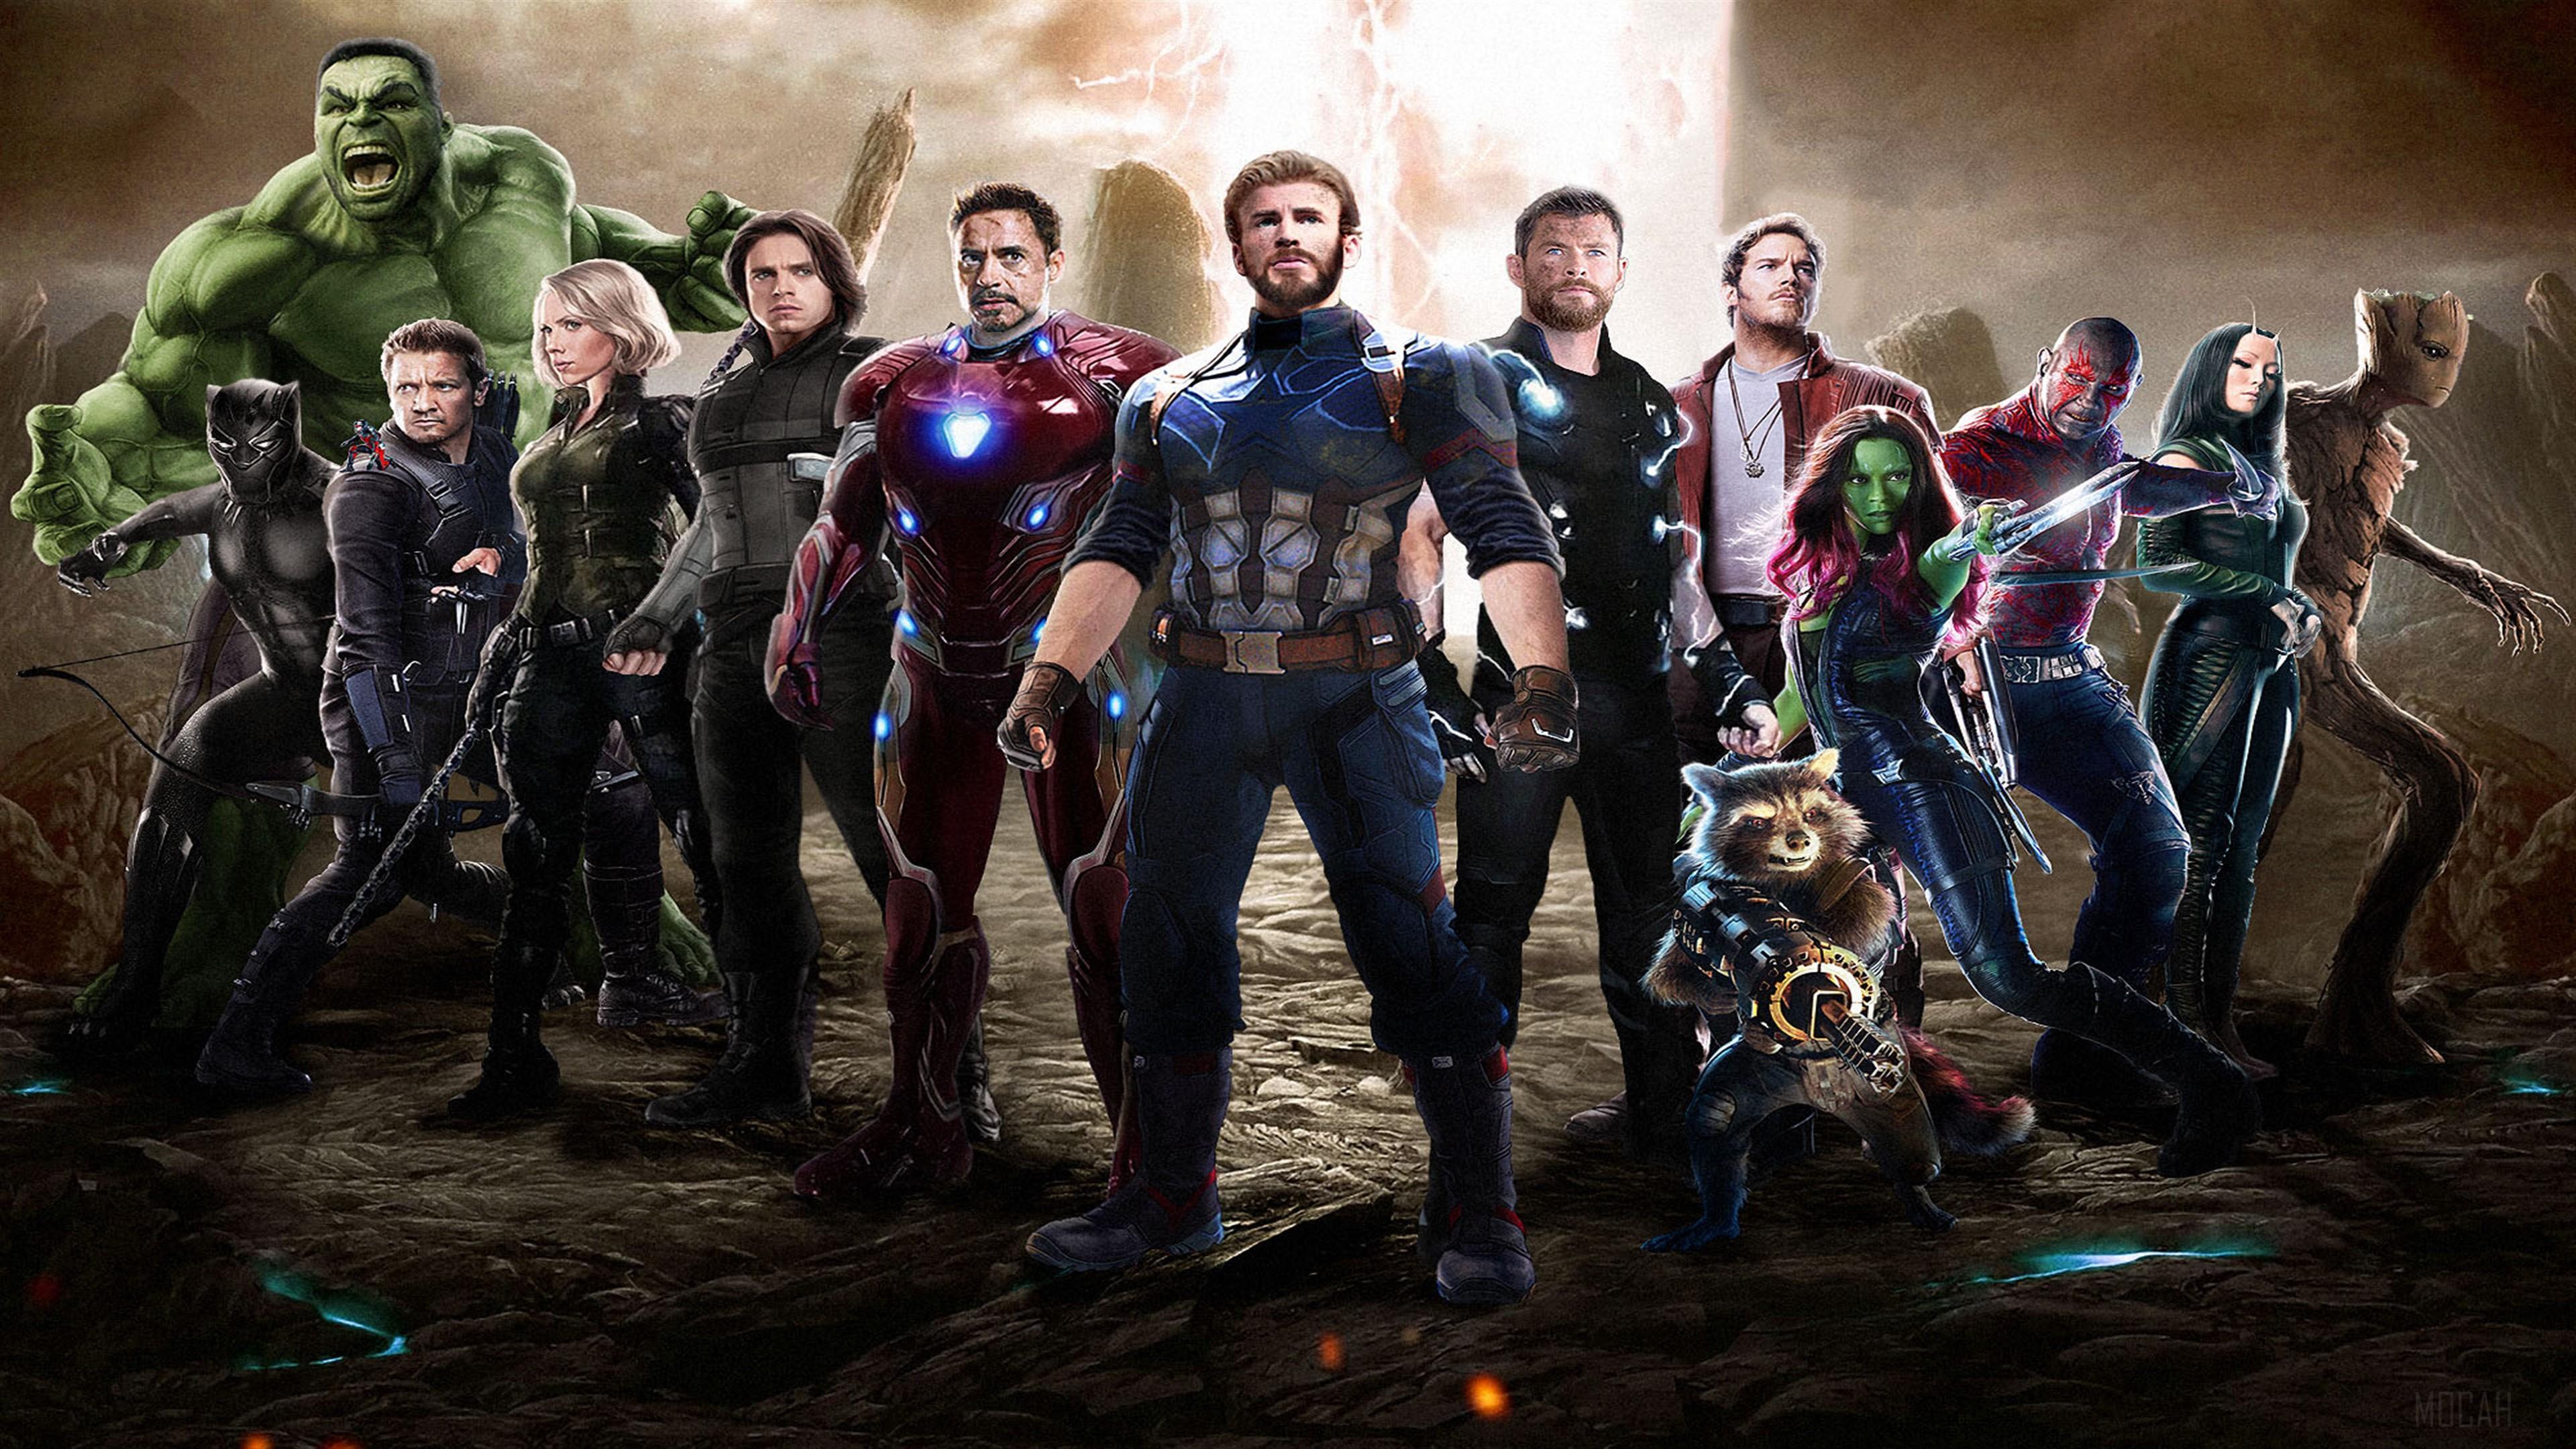 HD wallpaper, Avengers Infinity War 2018 Movie Fan Art 4K